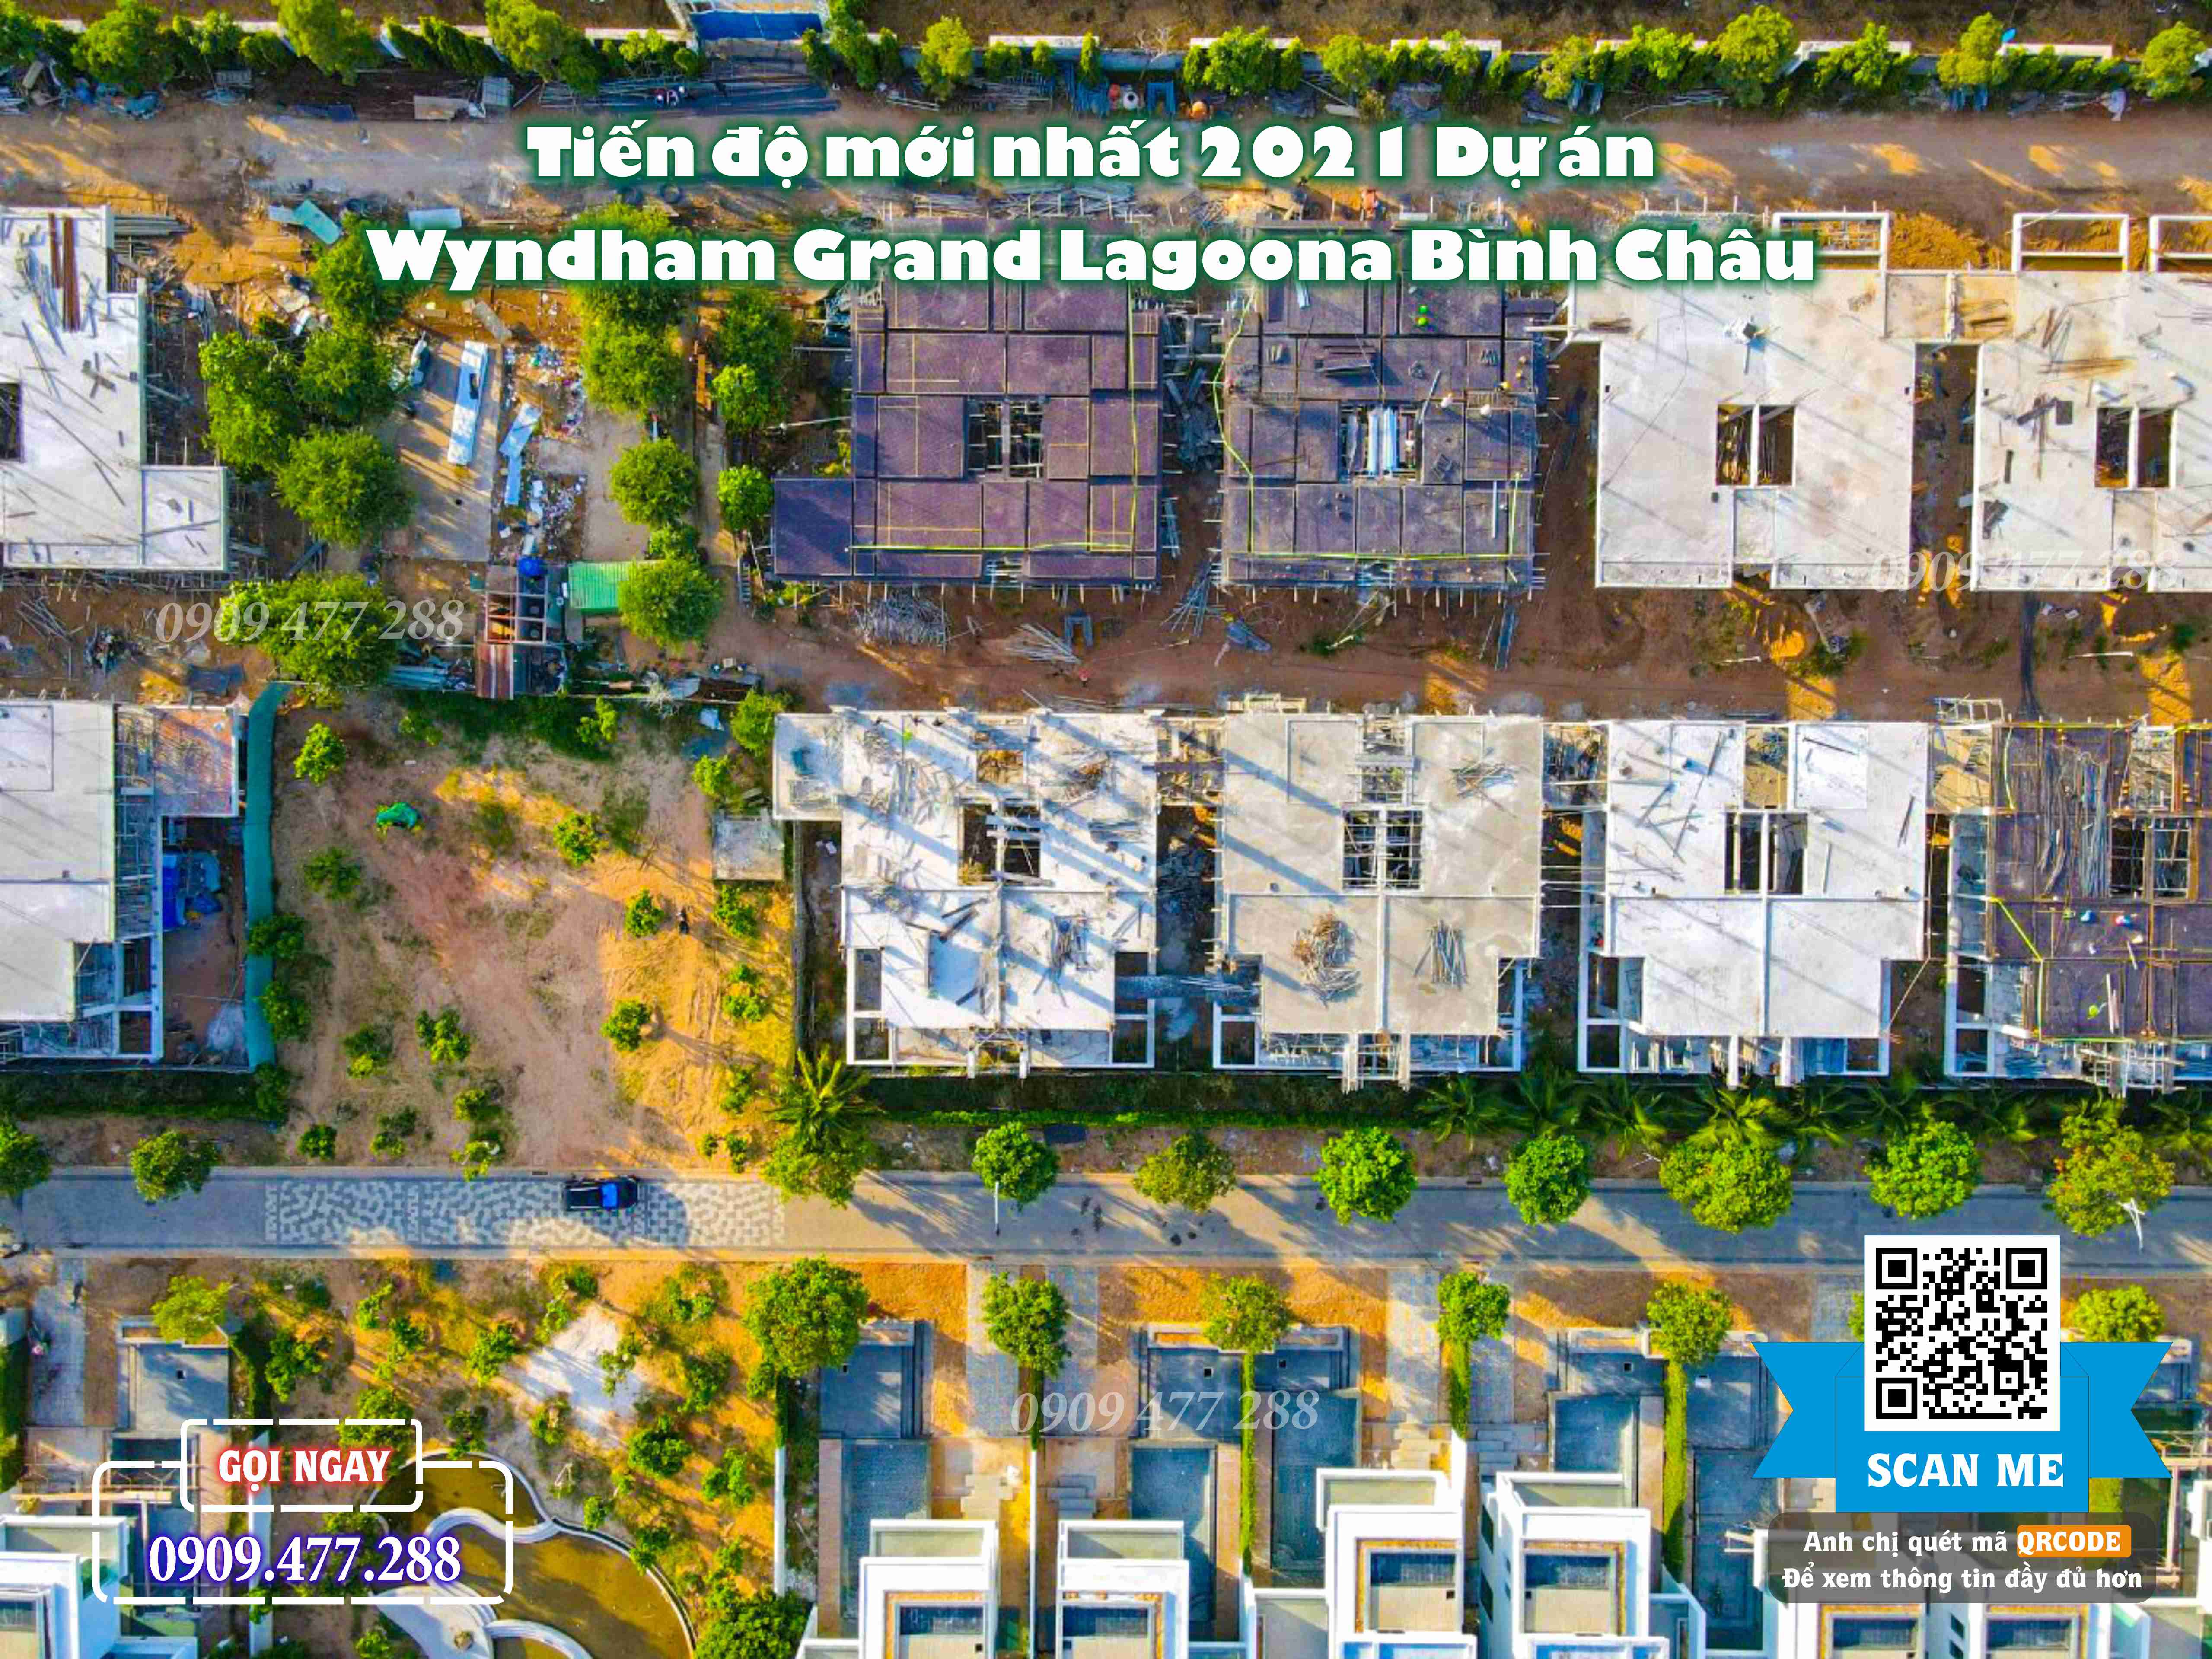 Wyndham Grand Lagoona Bình Châu (18)